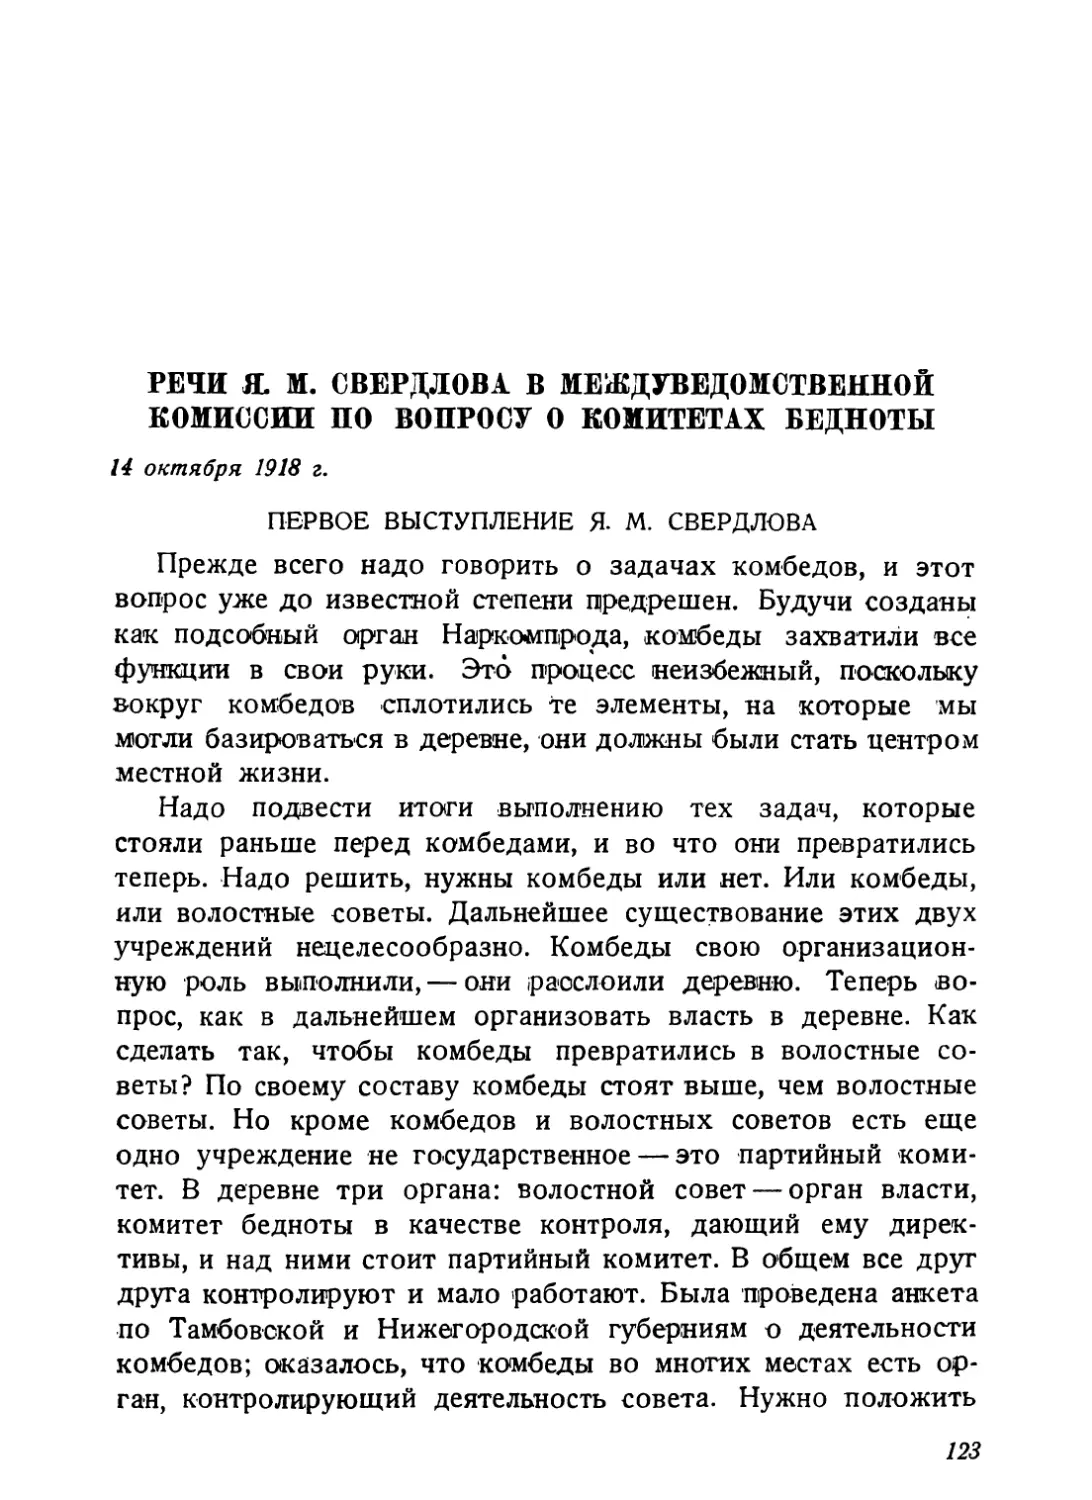 Речи Я. М. Свердлова в междуведомственной комиссии по вопросу о комитетах бедноты, 14 октября 1918 г